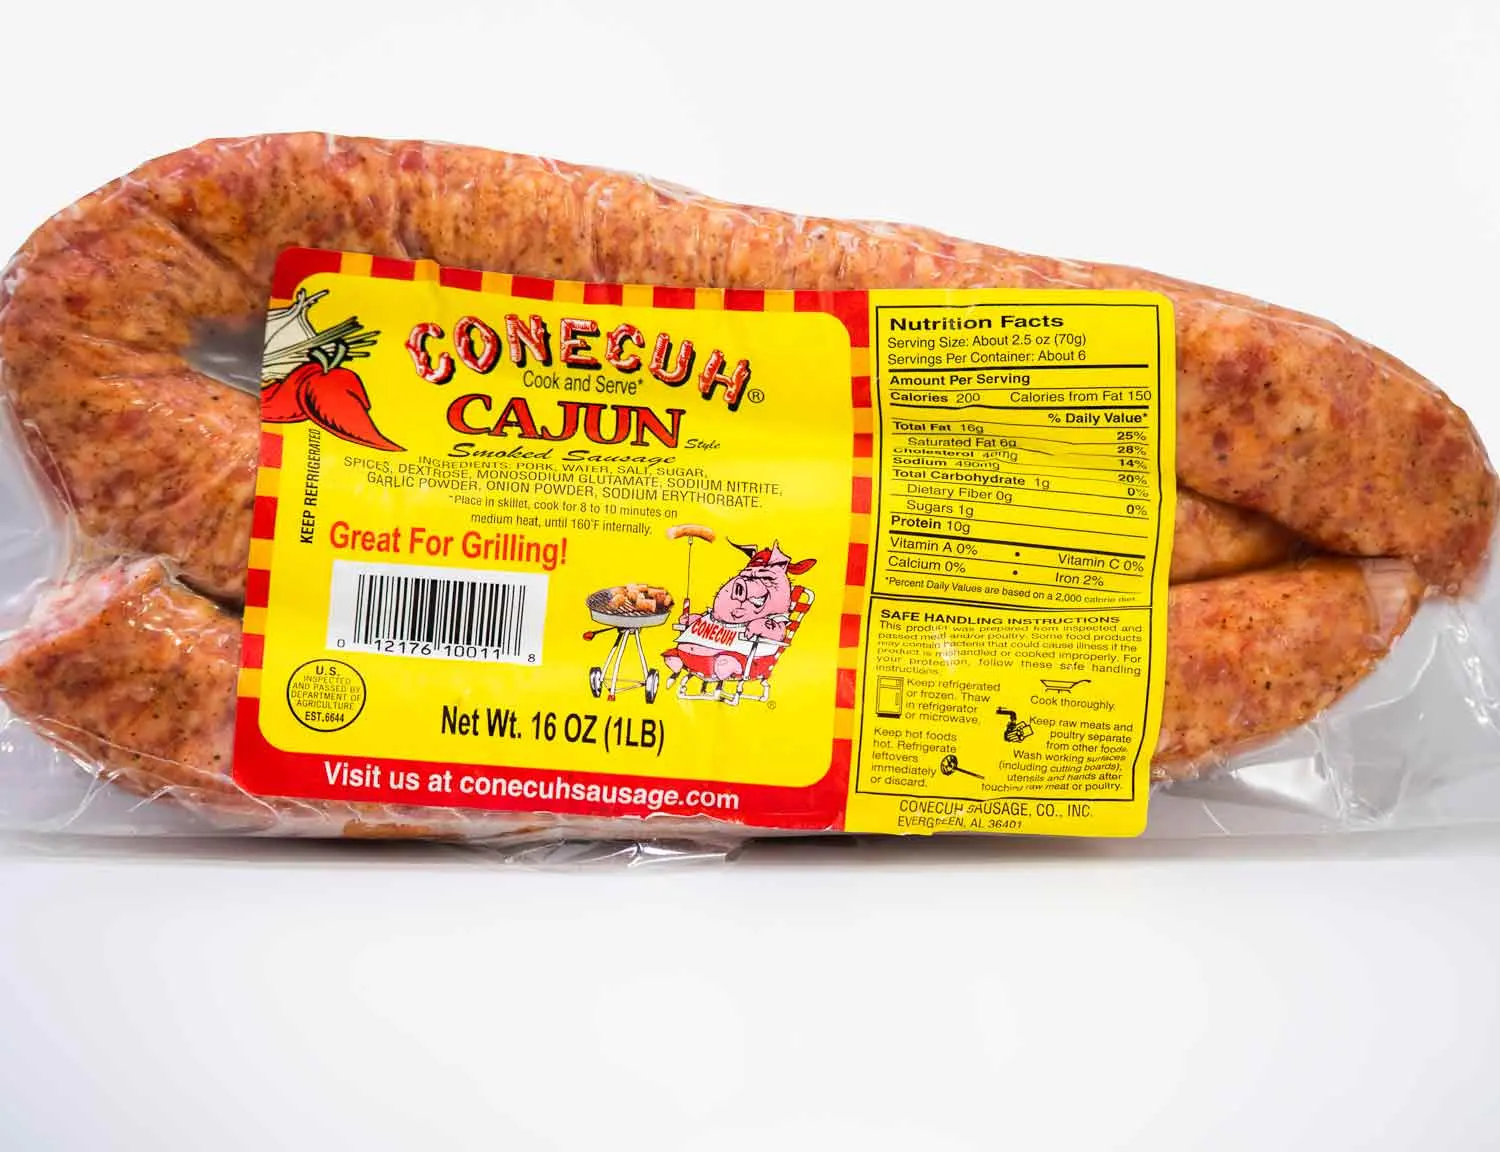 louisiana smoked sausage - Are Louisiana sausages spicy